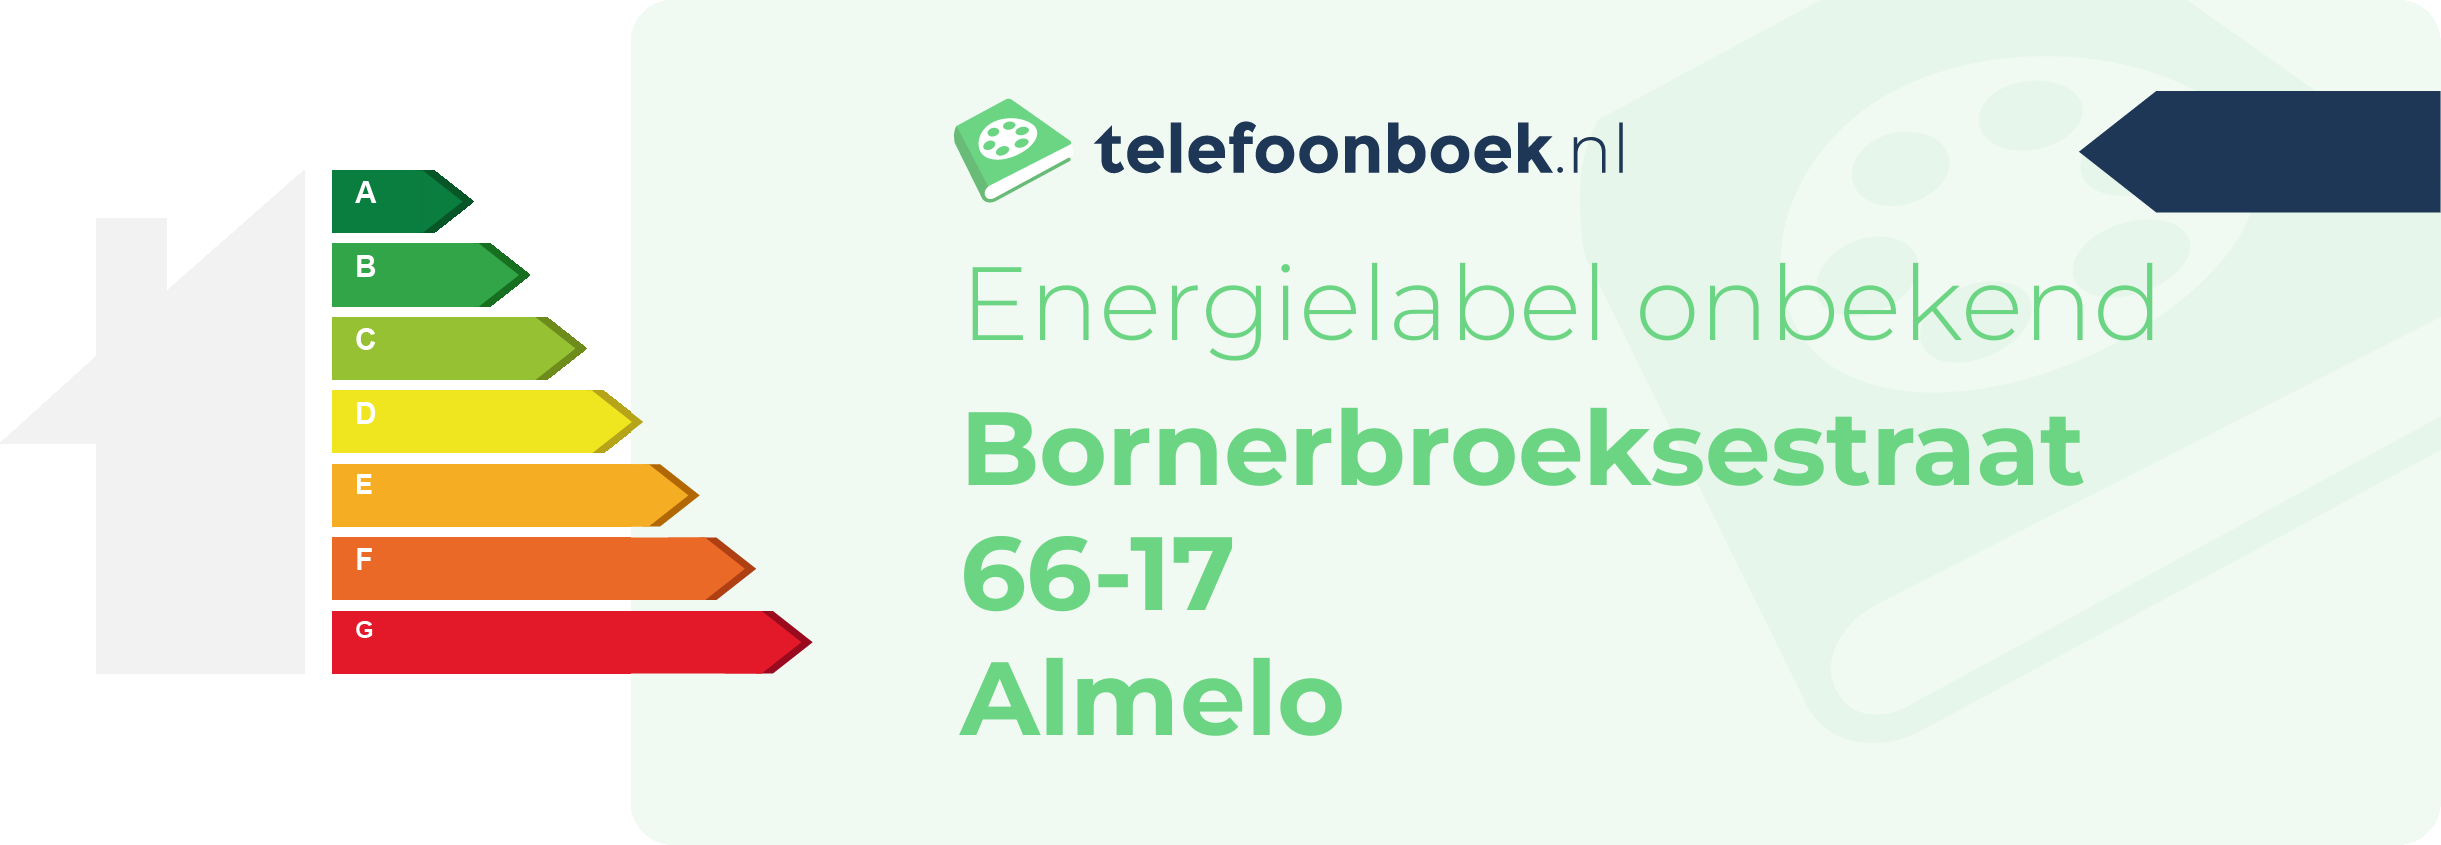 Energielabel Bornerbroeksestraat 66-17 Almelo